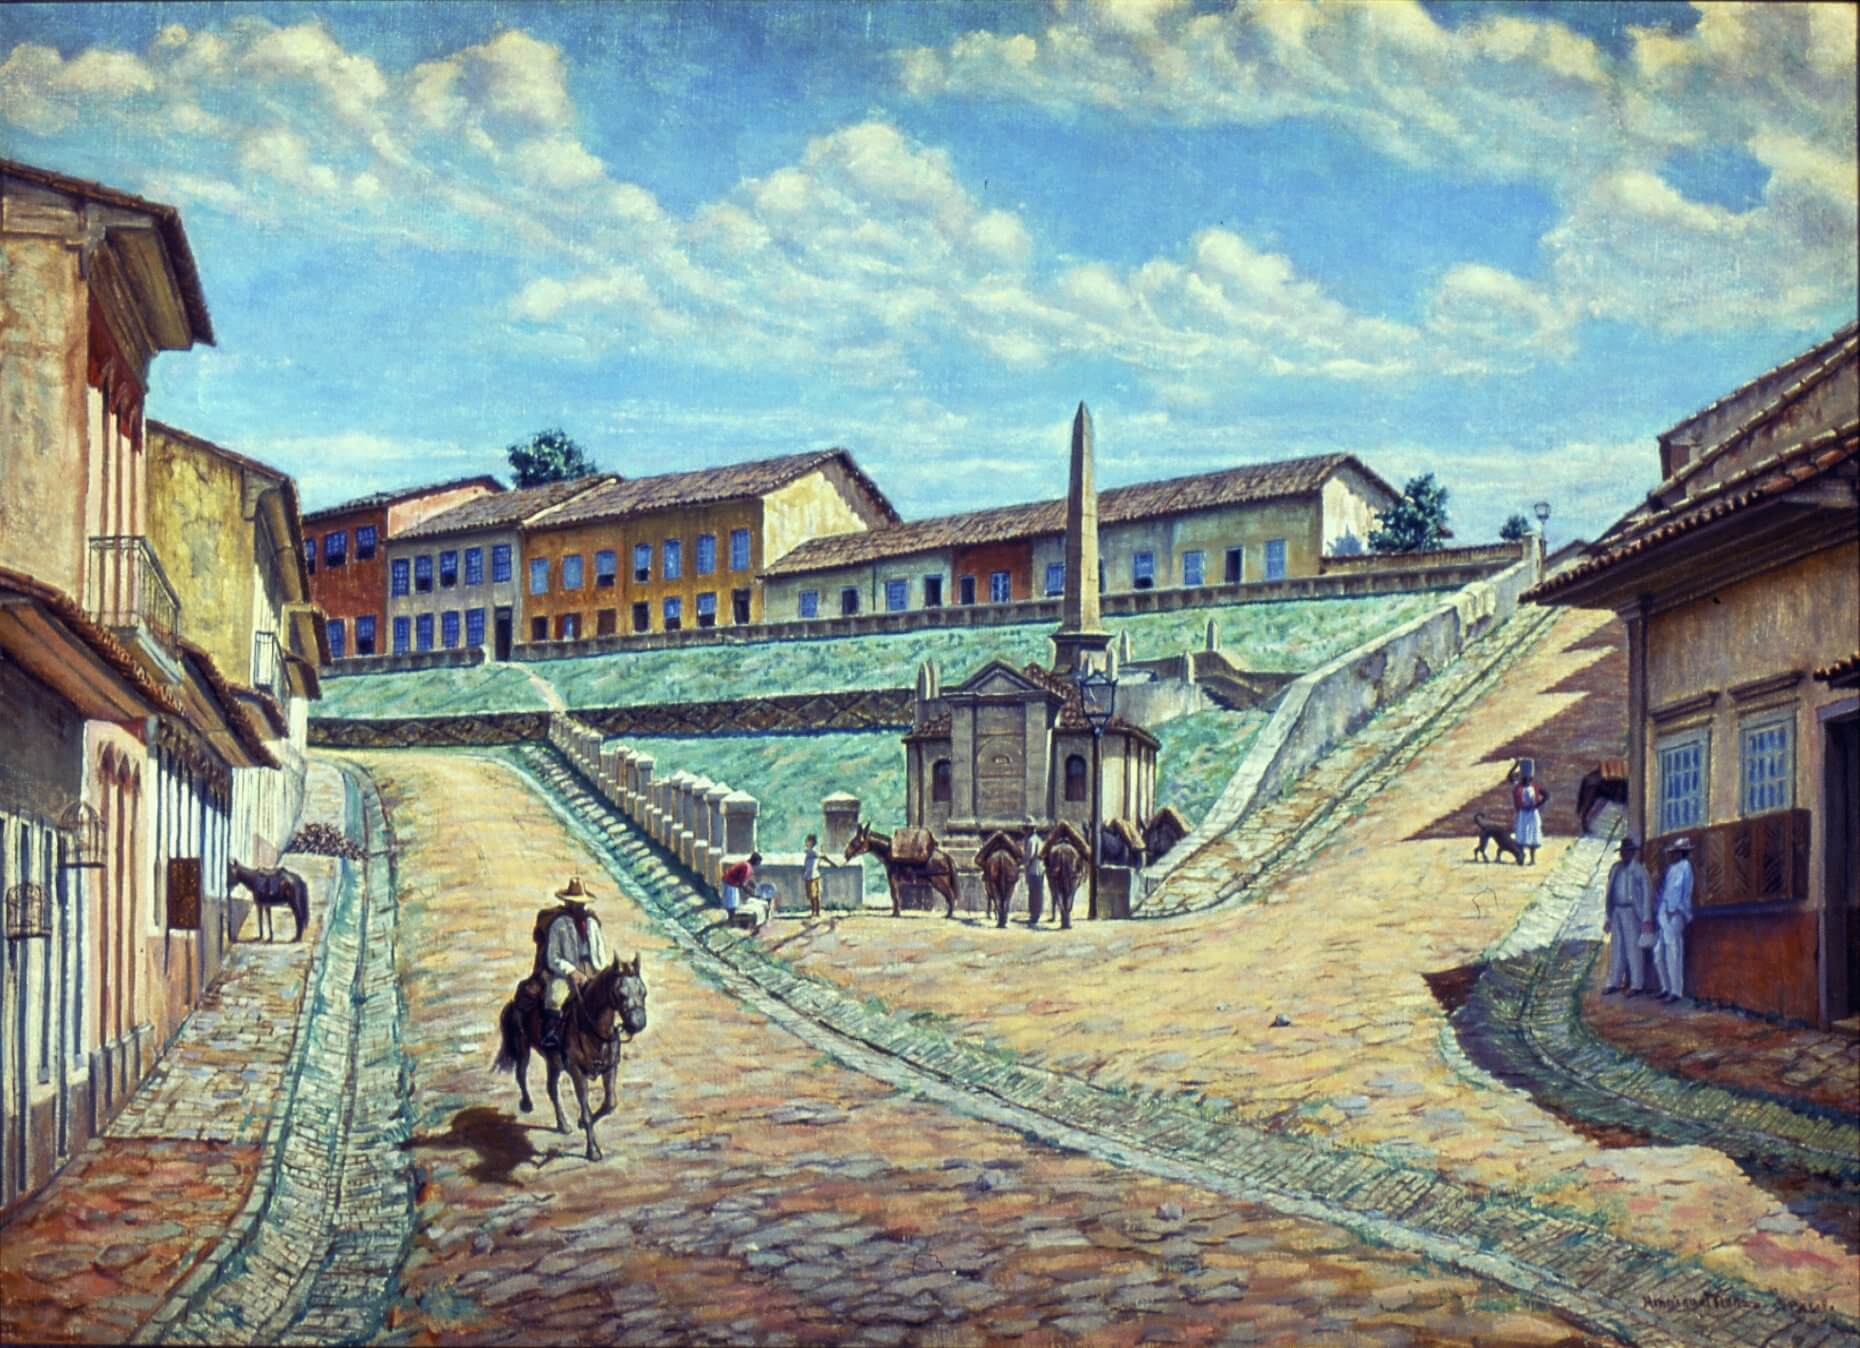 PIQUES, 1860_MANZO, HENRIQUE